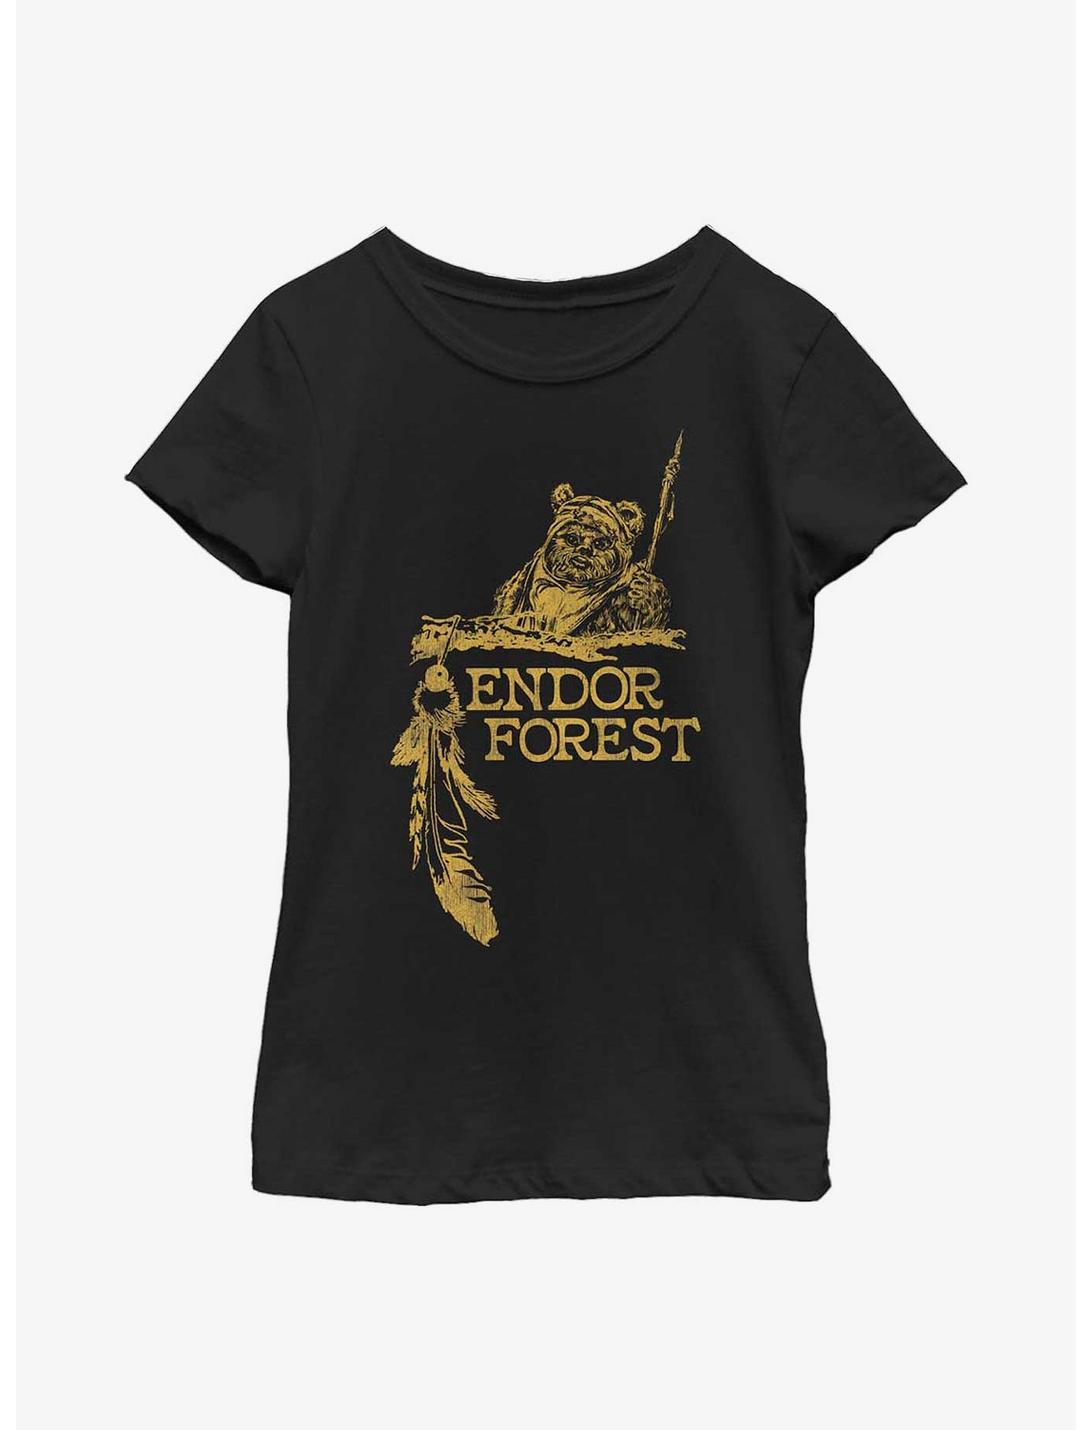 Star Wars Endor Forest Youth Girls T-Shirt, BLACK, hi-res